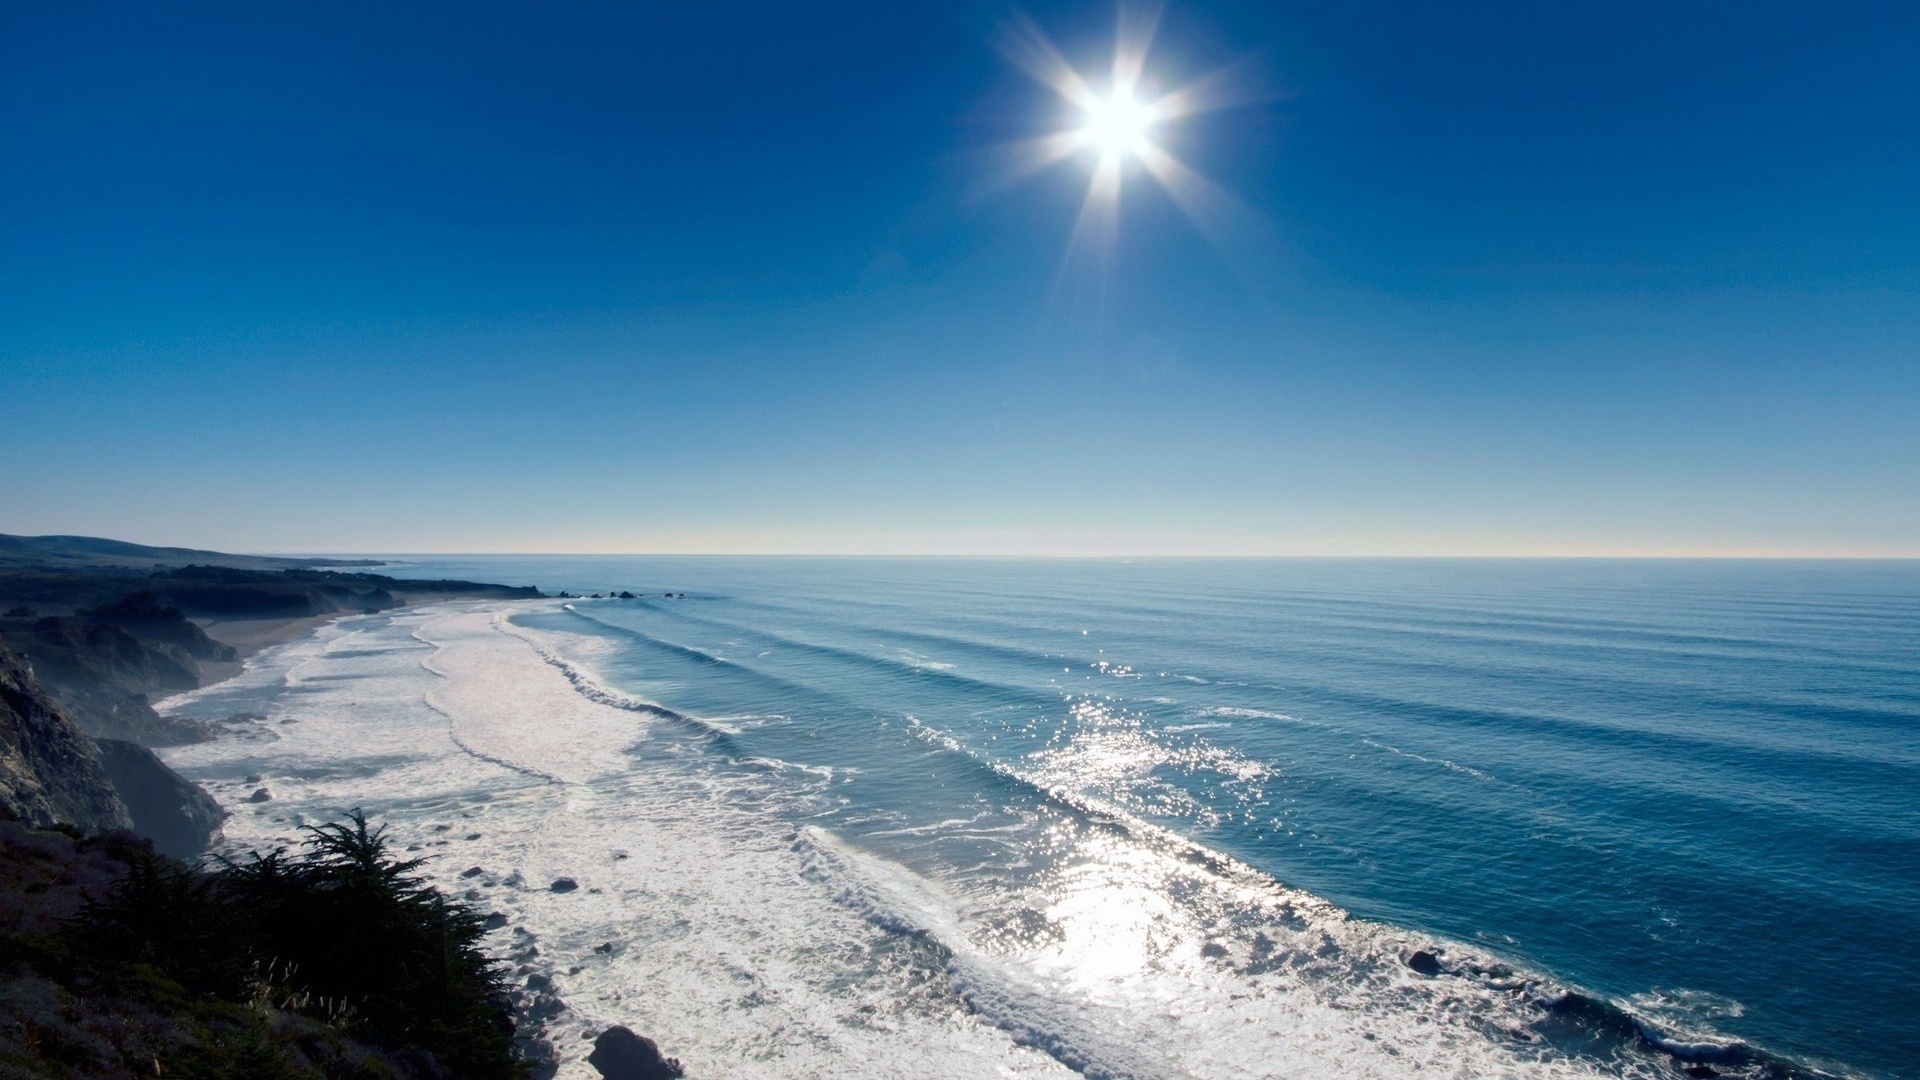 Скачать обои бесплатно Солнце, Волны, Пейзаж, Море картинка на рабочий стол ПК